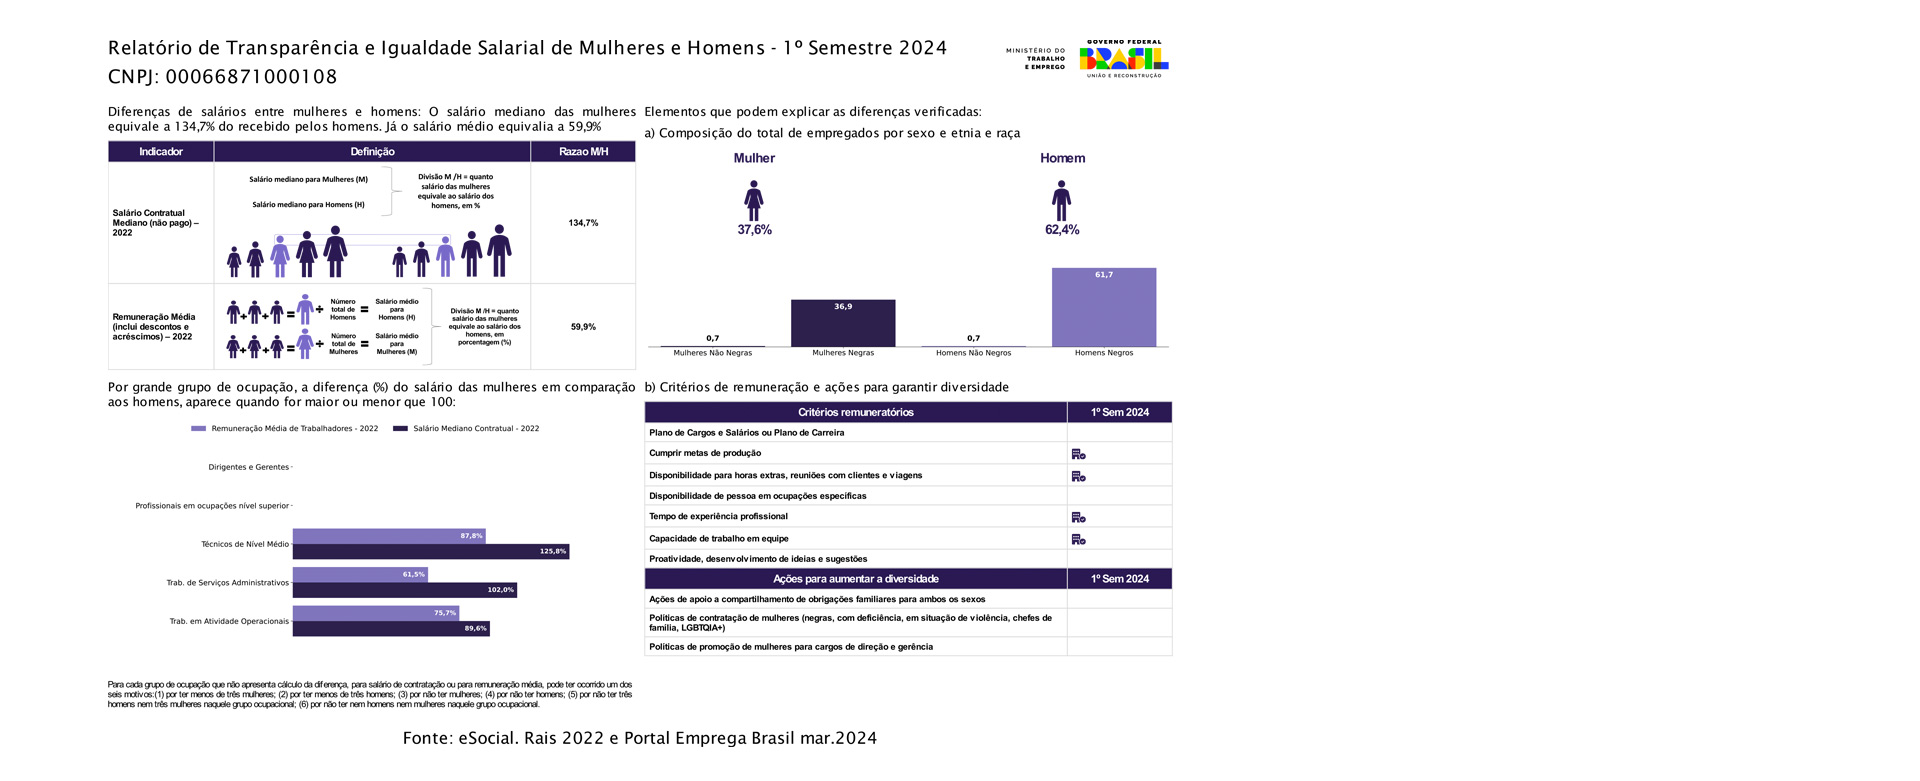 Relatório de Transparência e Igualdade Salarial de Mulheres e Homens - 1° semestre 2024